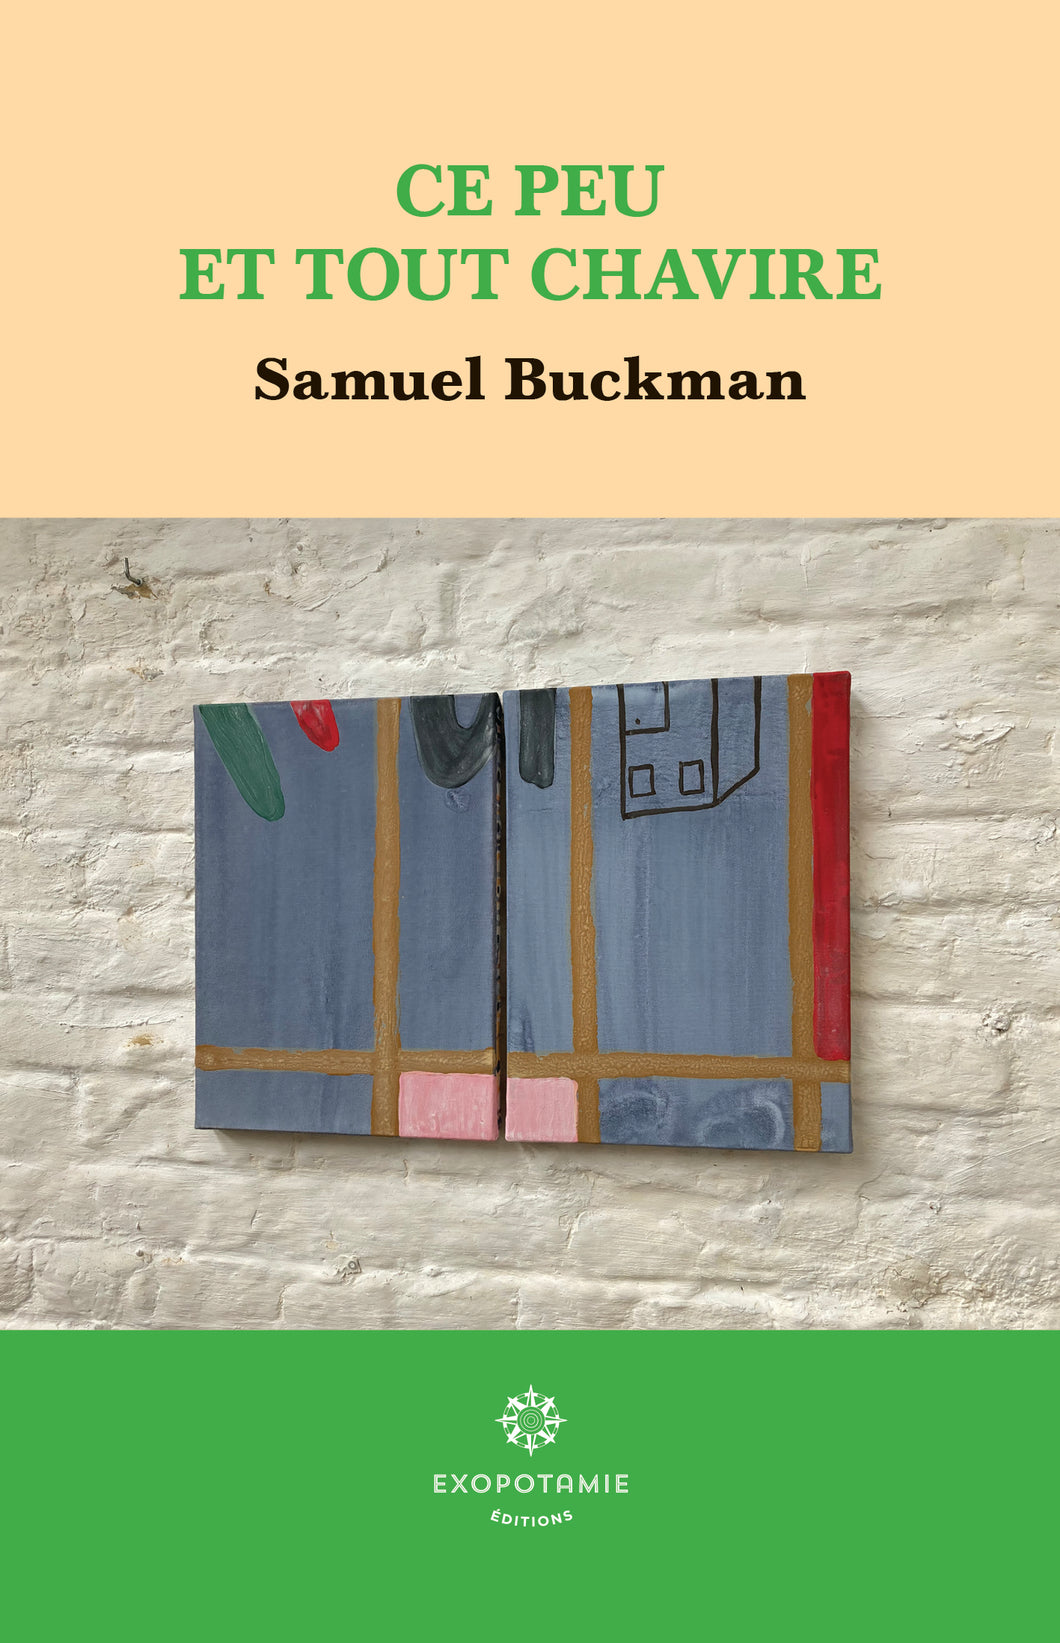 Samuel Buckman